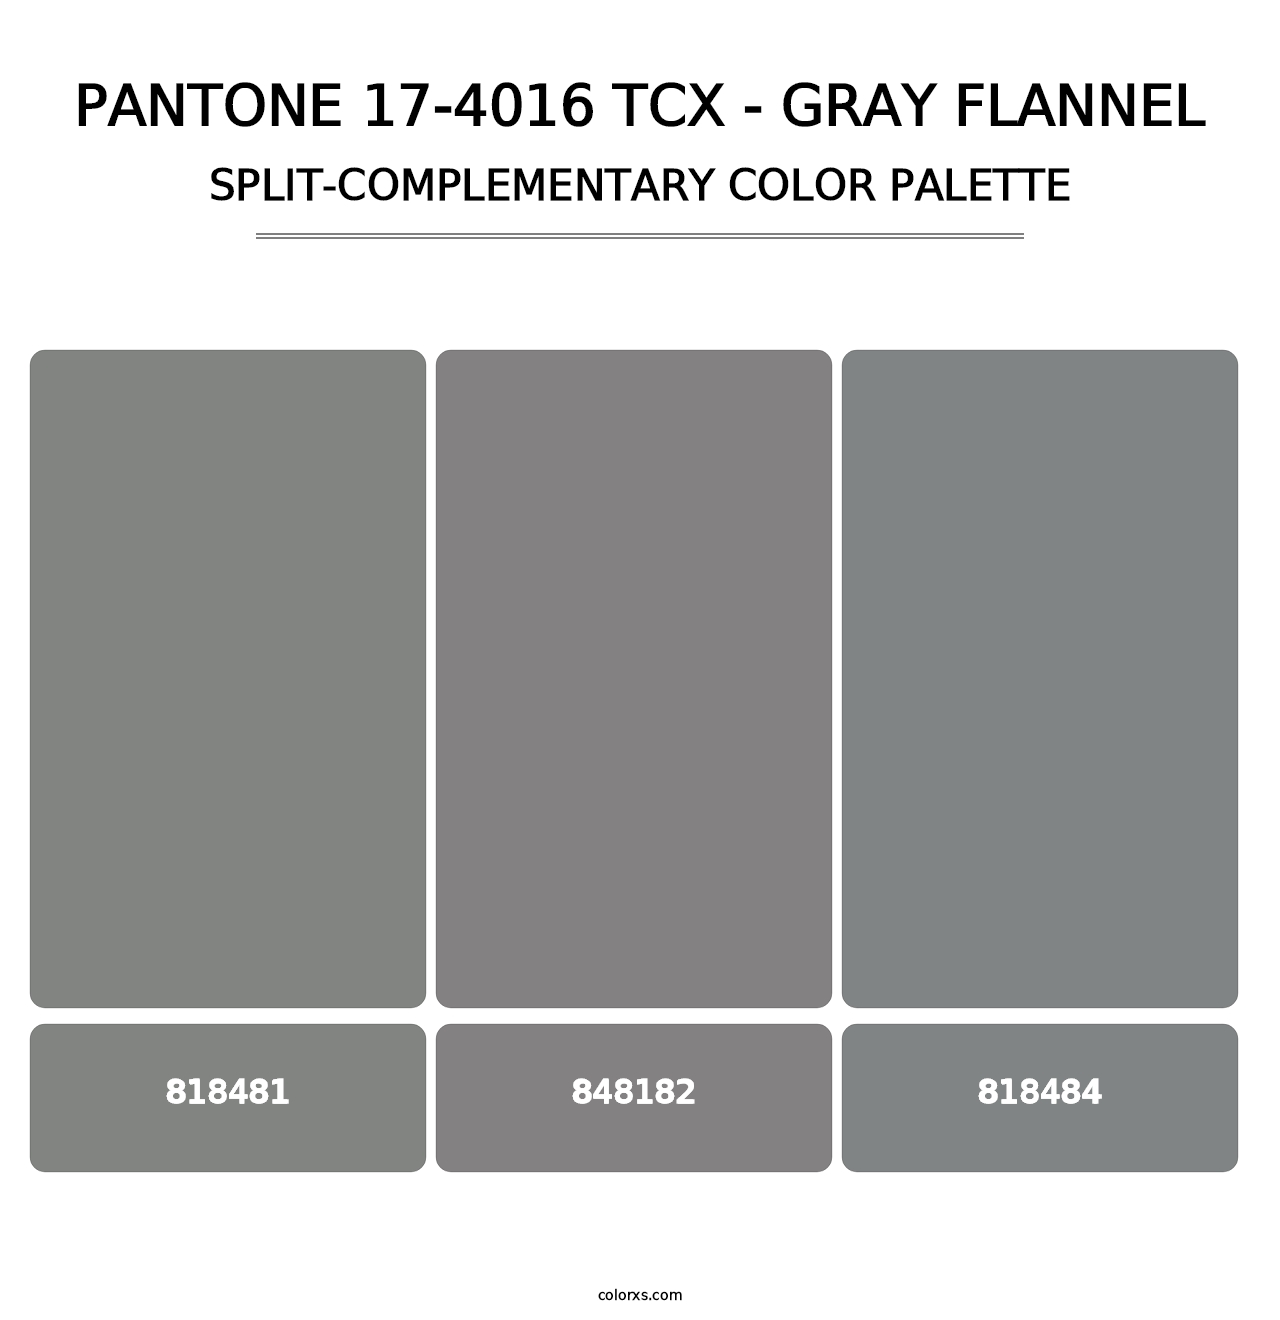 PANTONE 17-4016 TCX - Gray Flannel - Split-Complementary Color Palette